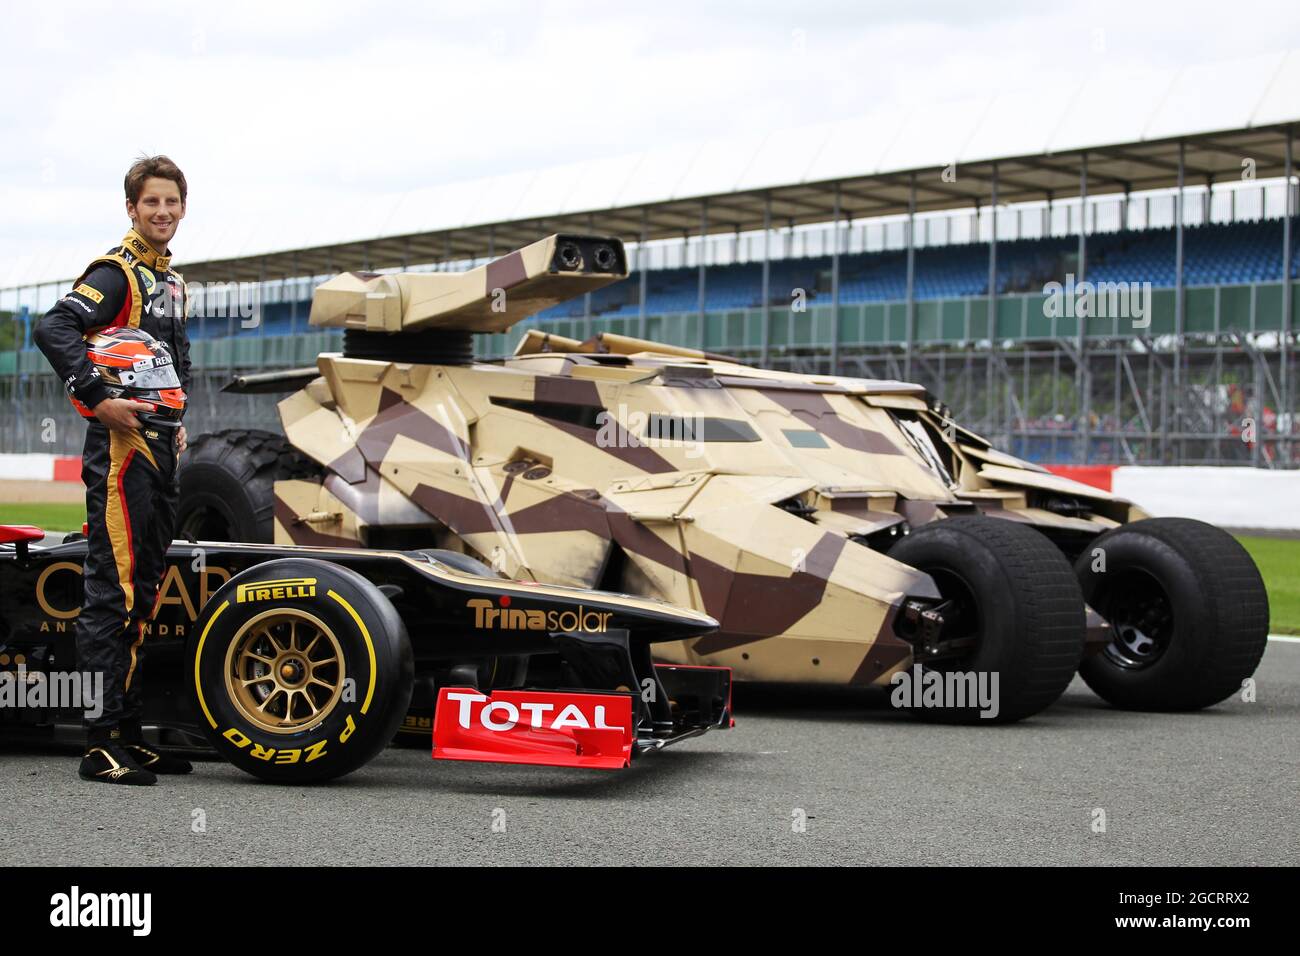 Romain Grosjean (FRA) Lotus F1 E20 mit dem Tumbler-Fahrzeug aus dem Batman-Film The Dark Night Rises. Großer Preis von Großbritannien, Donnerstag, 5. Juli 2012. Silverstone, England. Stockfoto